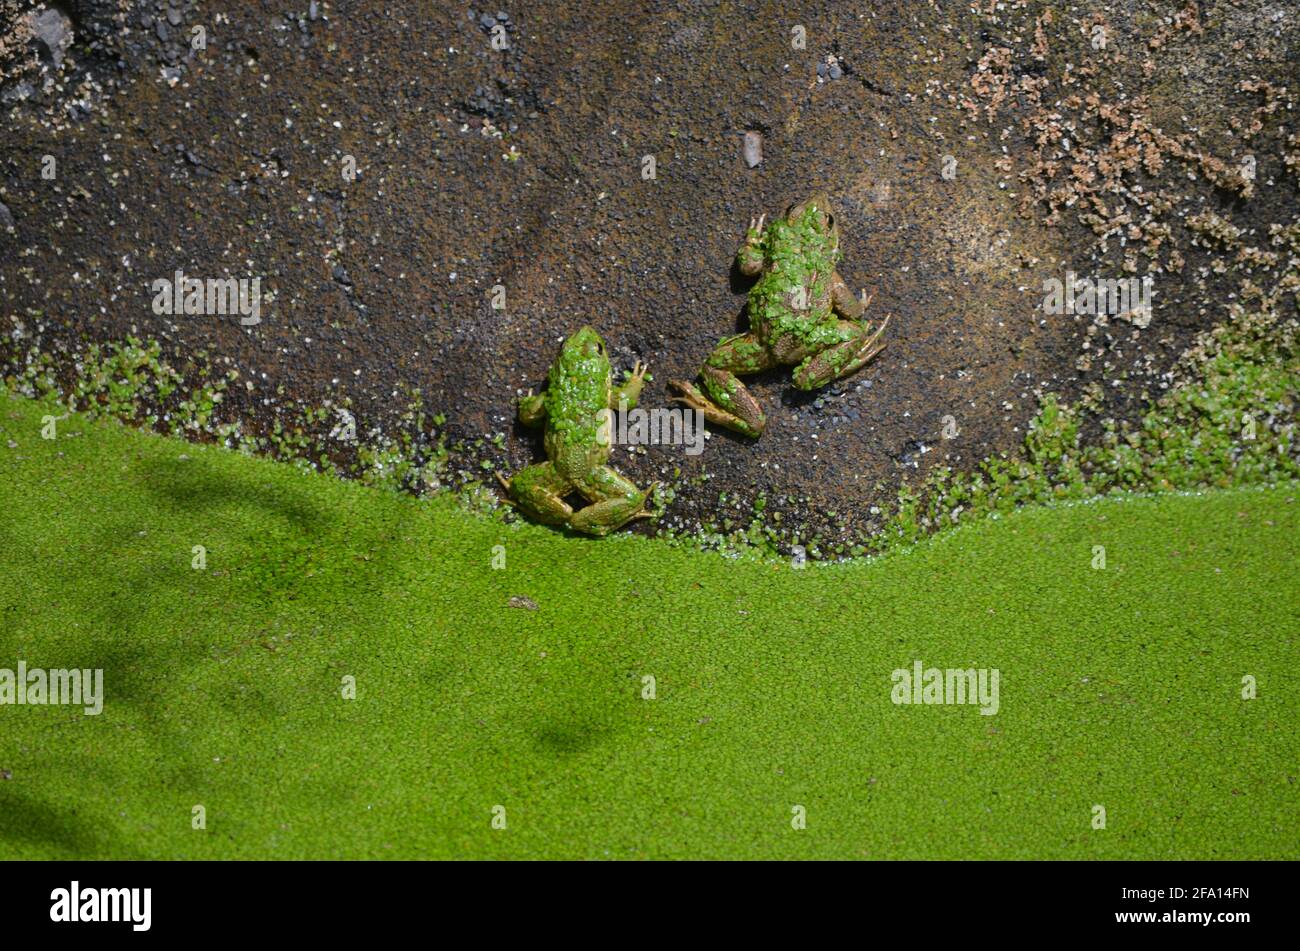 Iberischer grüner Frosch (Pelophylax perezi) in Bewässereichen, Insel  Madeira (Portugal Stockfotografie - Alamy